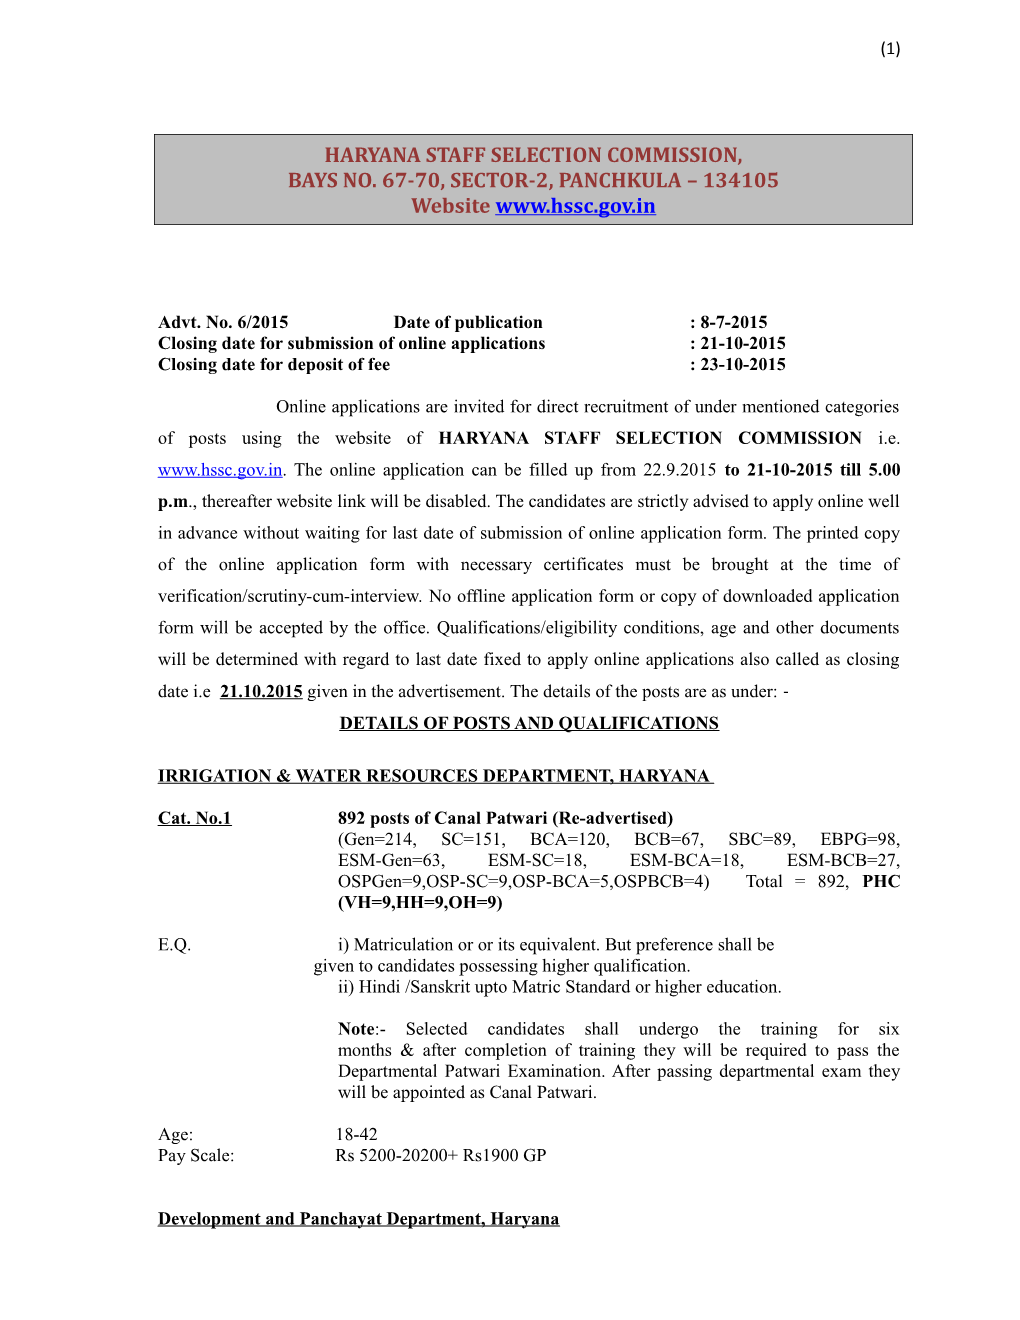 Advt. No. 6/2015 Date of Publication : 8-7-2015